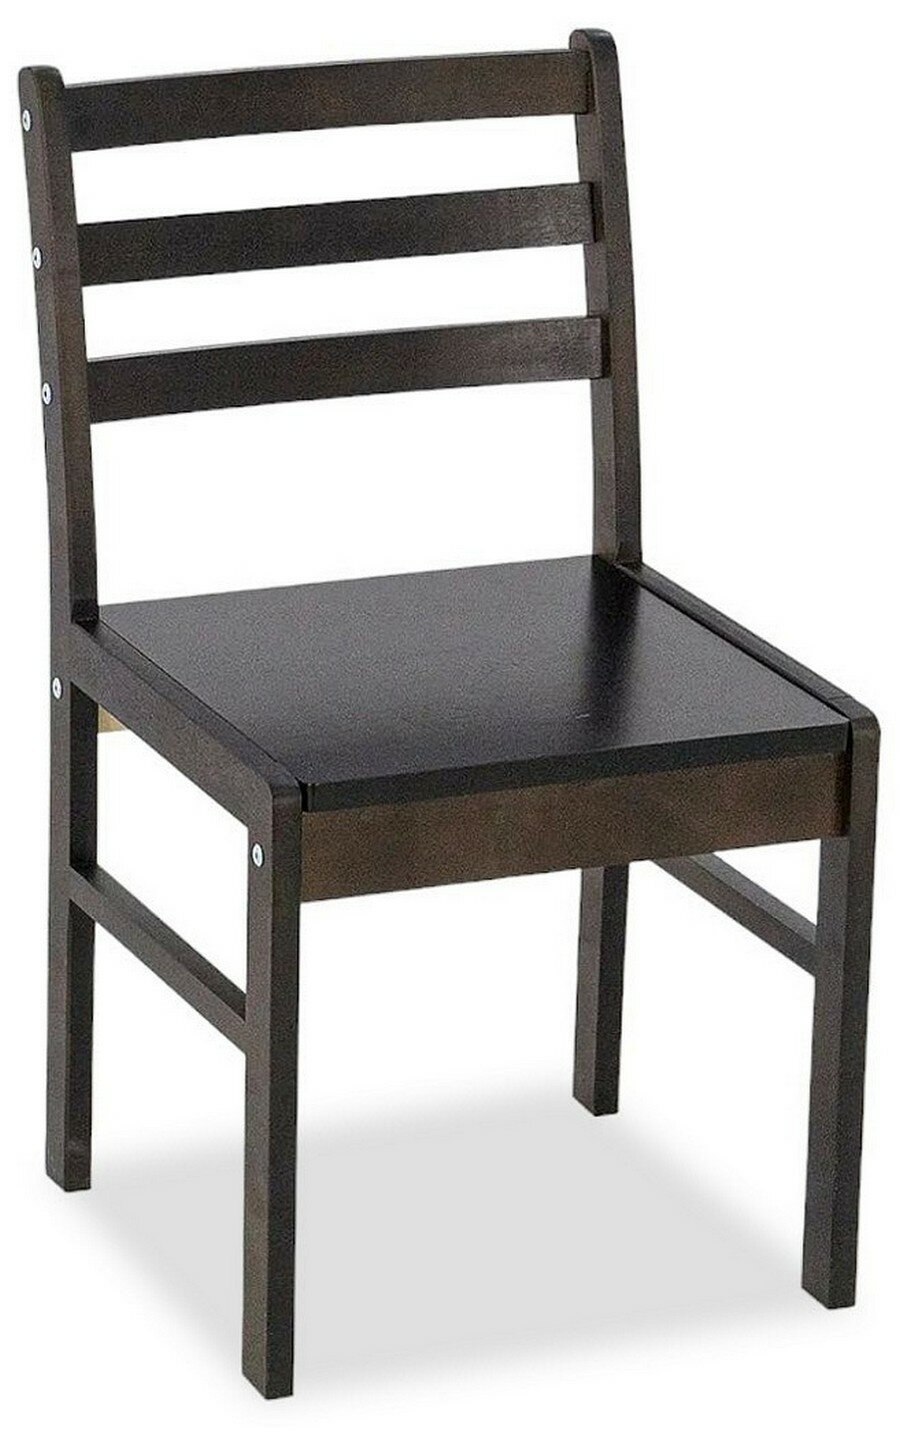 Деревянный стул кухонный со спинкой без подлокотников. Цвет: белый